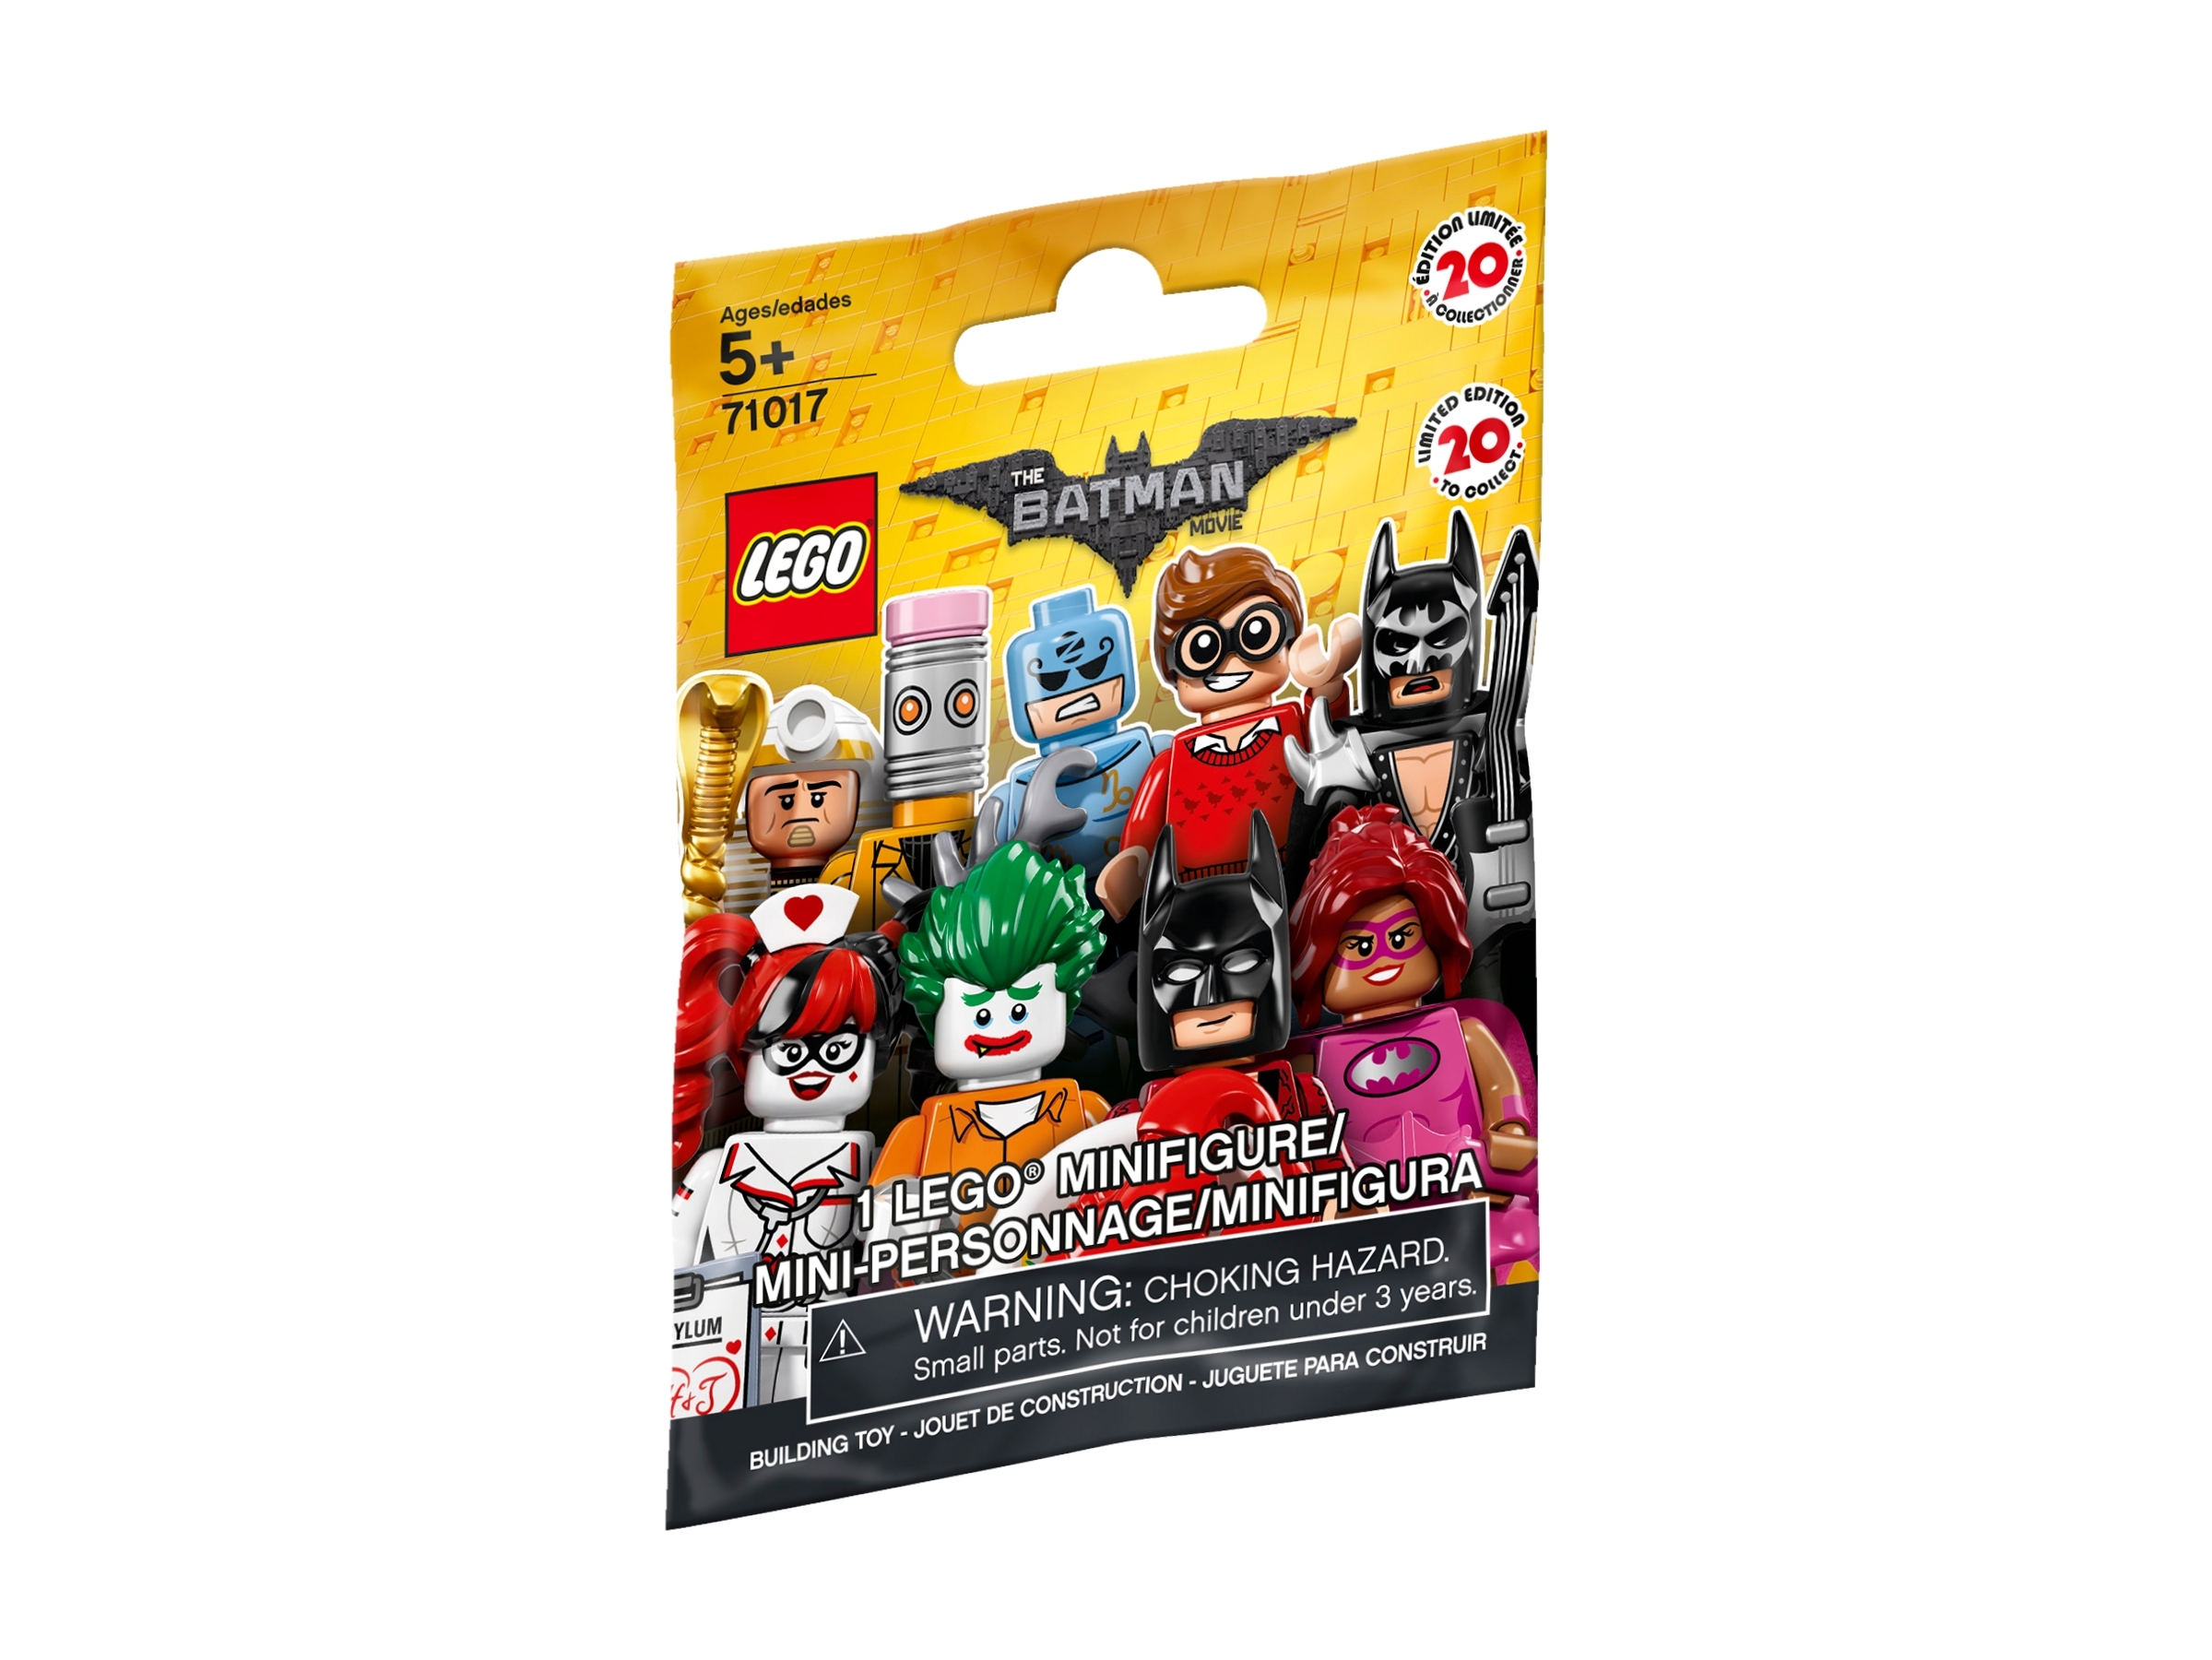 Choisissez votre figurine Lego minifig 71017 Batman the Movie Serie 1 NEW 